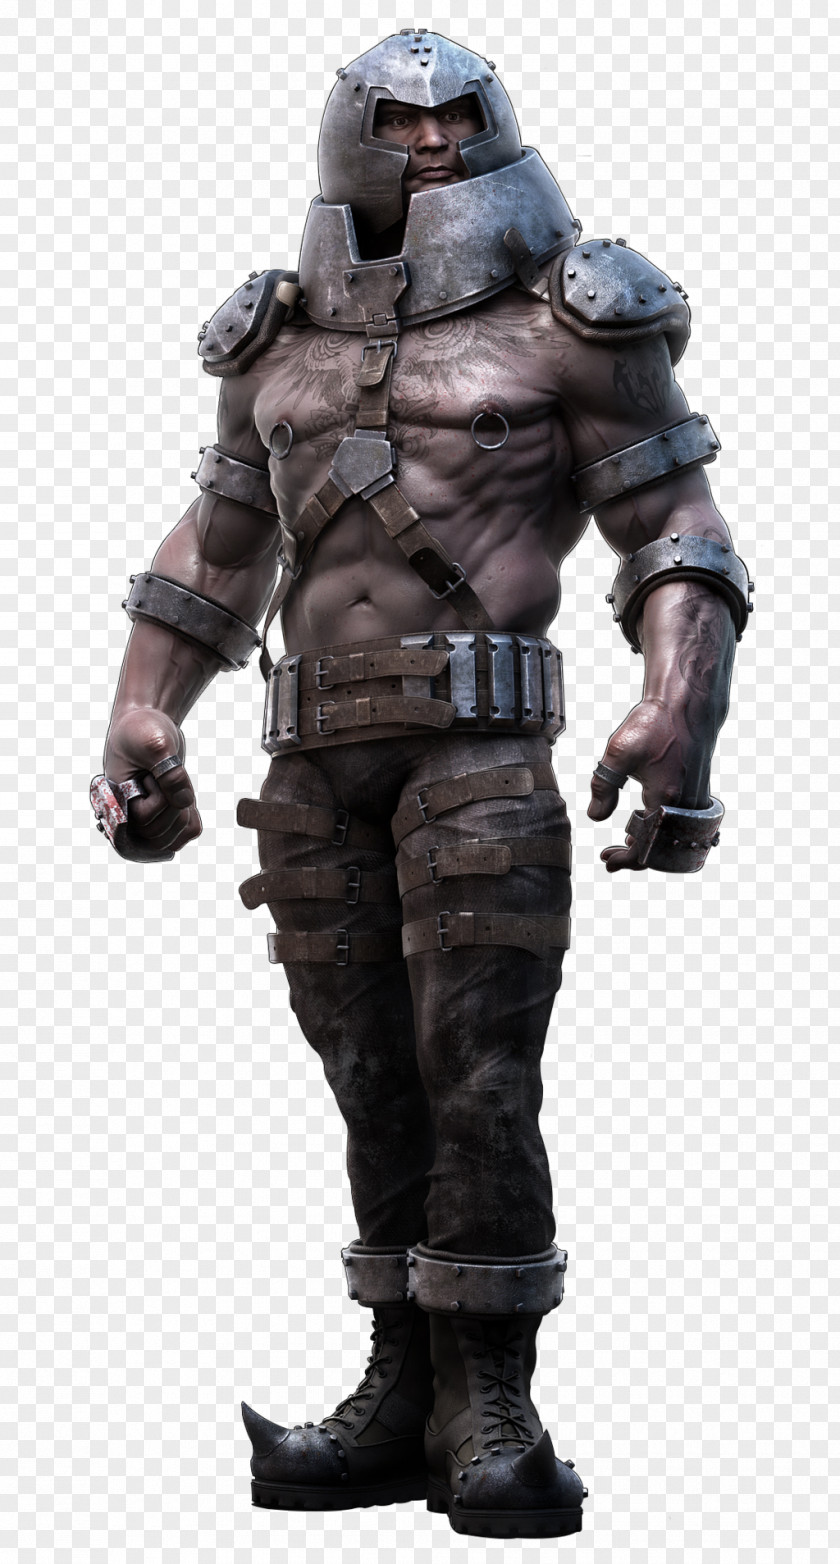 Hulk Juggernaut Professor X X-Men Superhero PNG